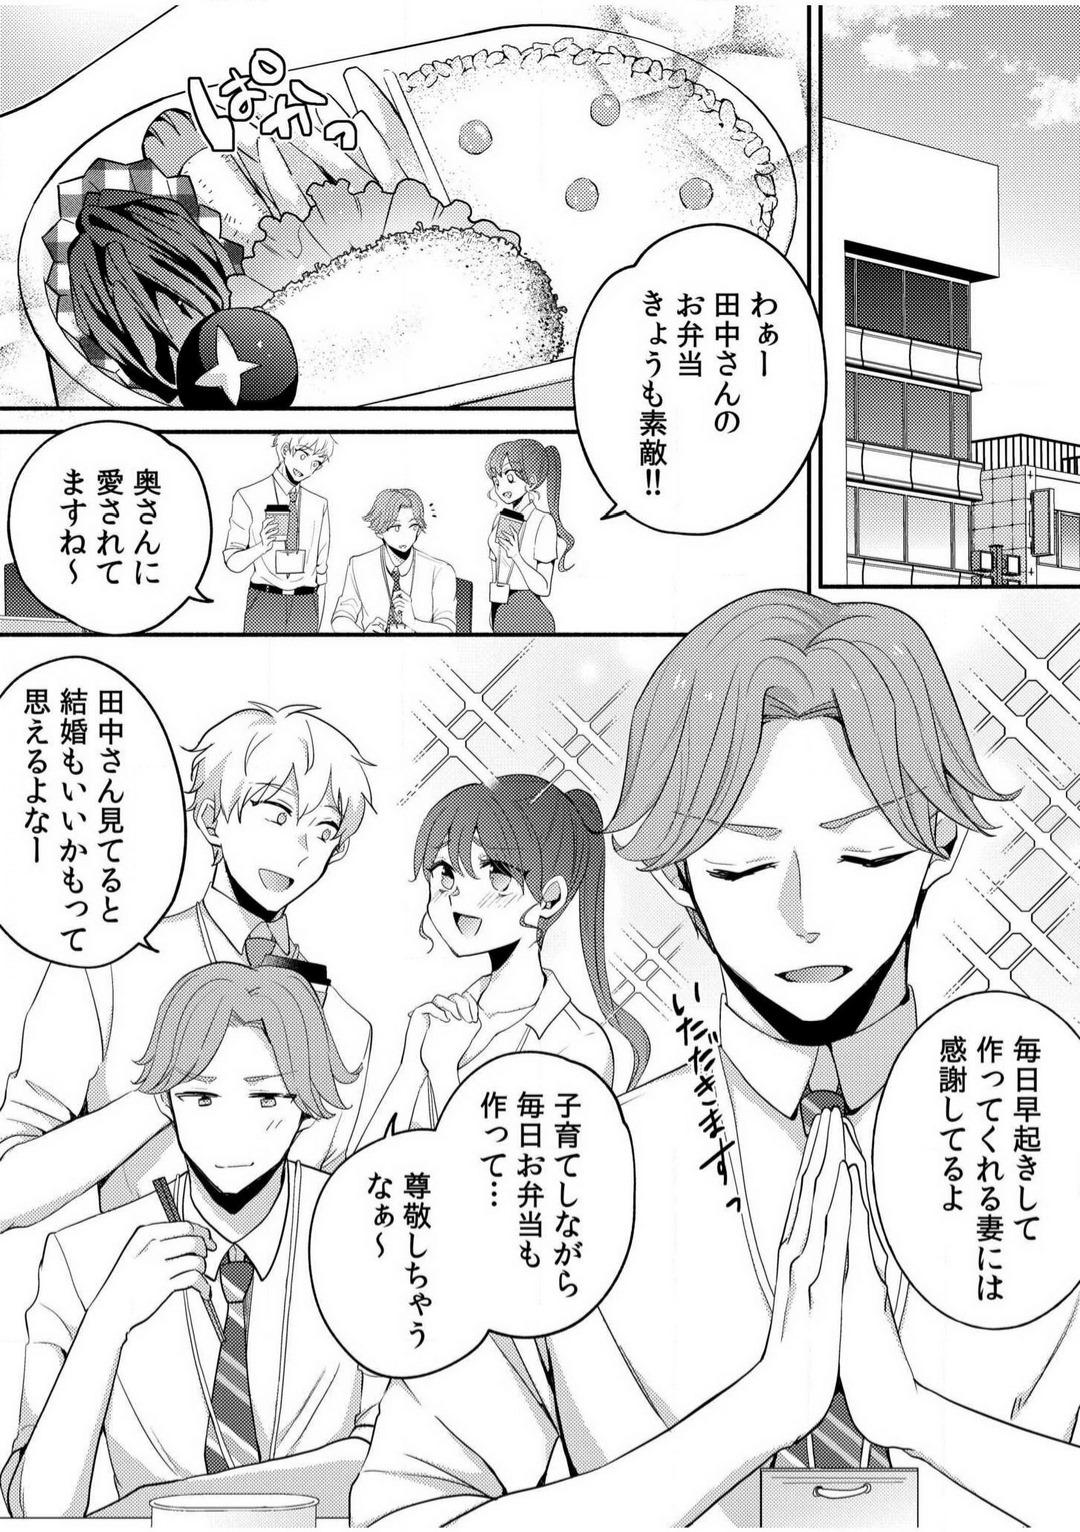 Parties [niko] Darashina Tsuma to Yoshi Yoshi Etchi! Kimochīi kara Oku ni Chodaii! [R18] 1-6 Ride - Page 2